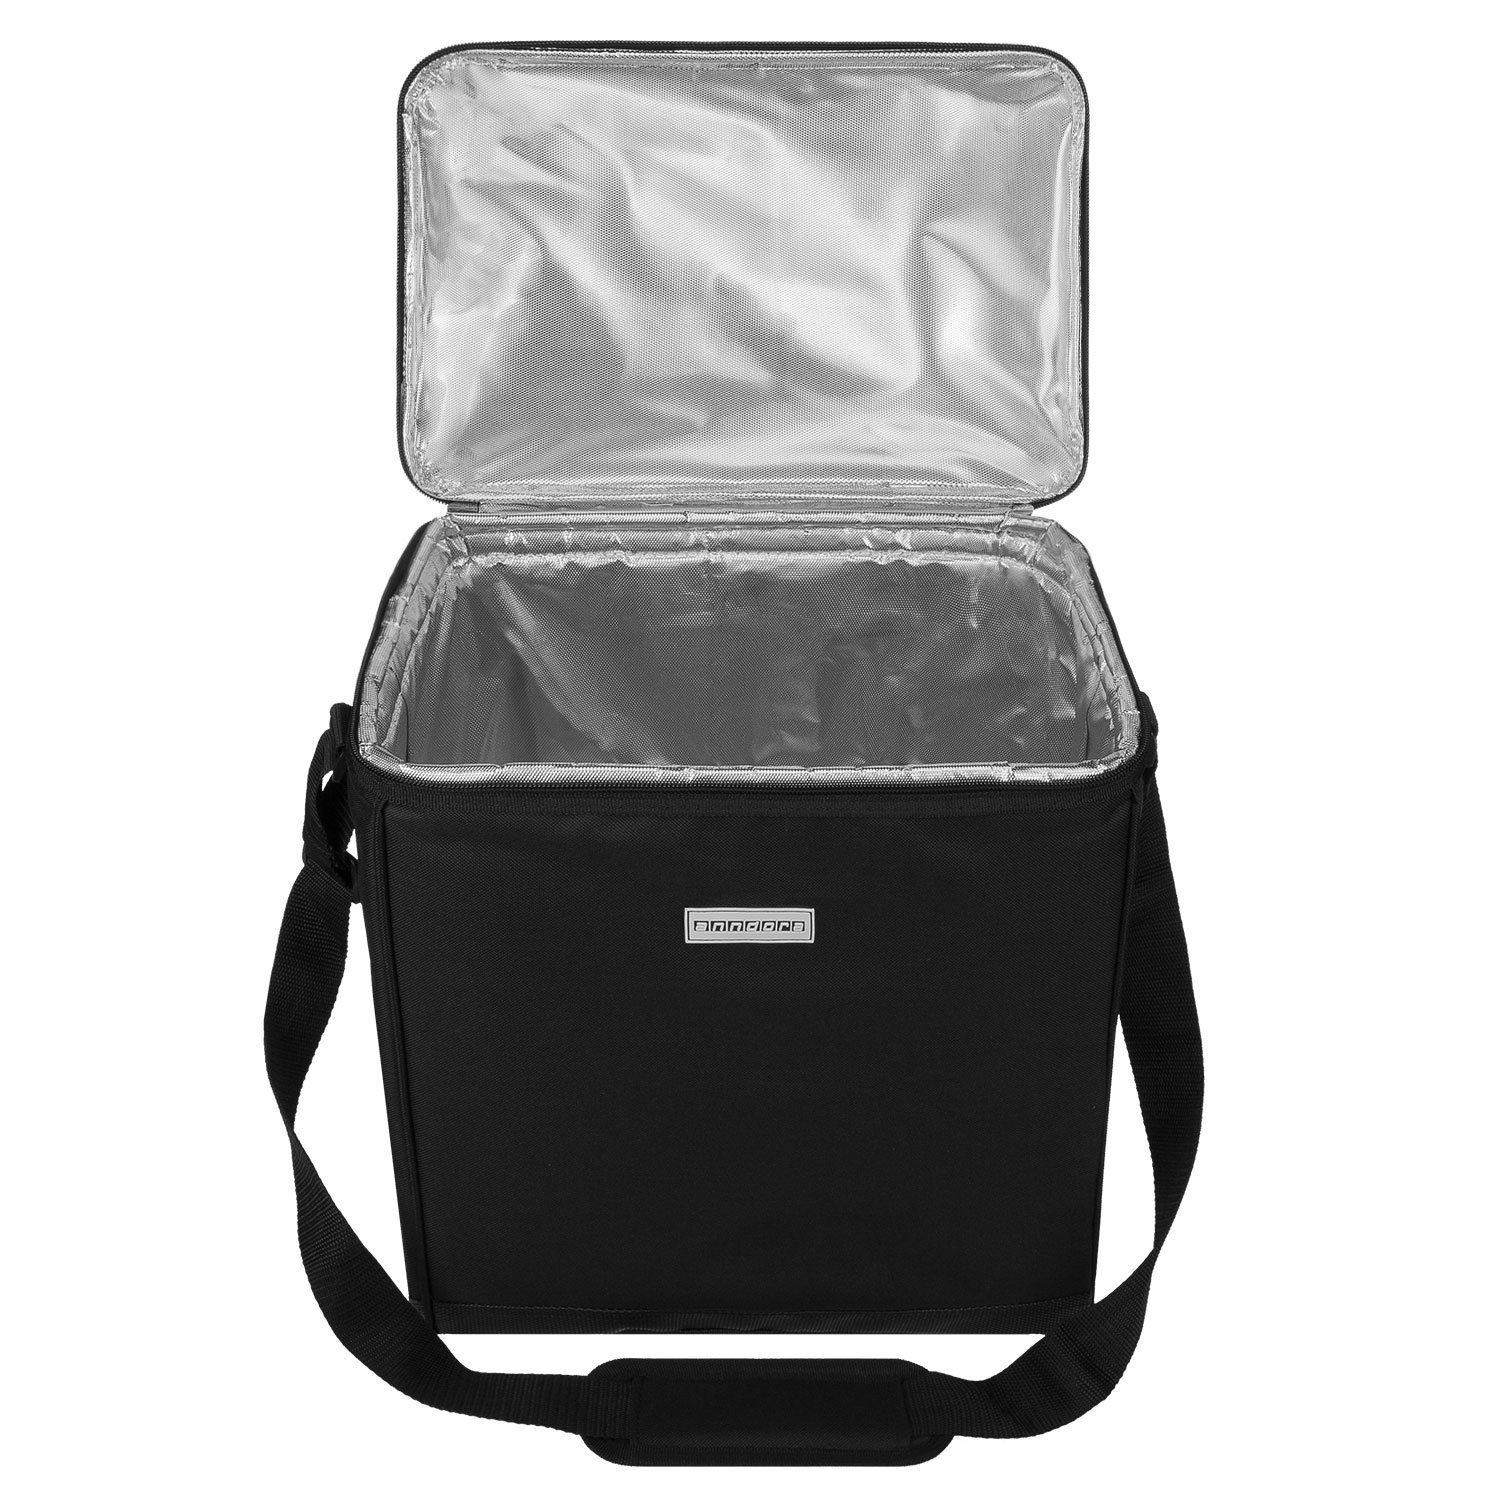 anndora Kühlbox Kühltasche schwarz 32L carrycruiser Kühleinsatz reisenthel - - kompatibel